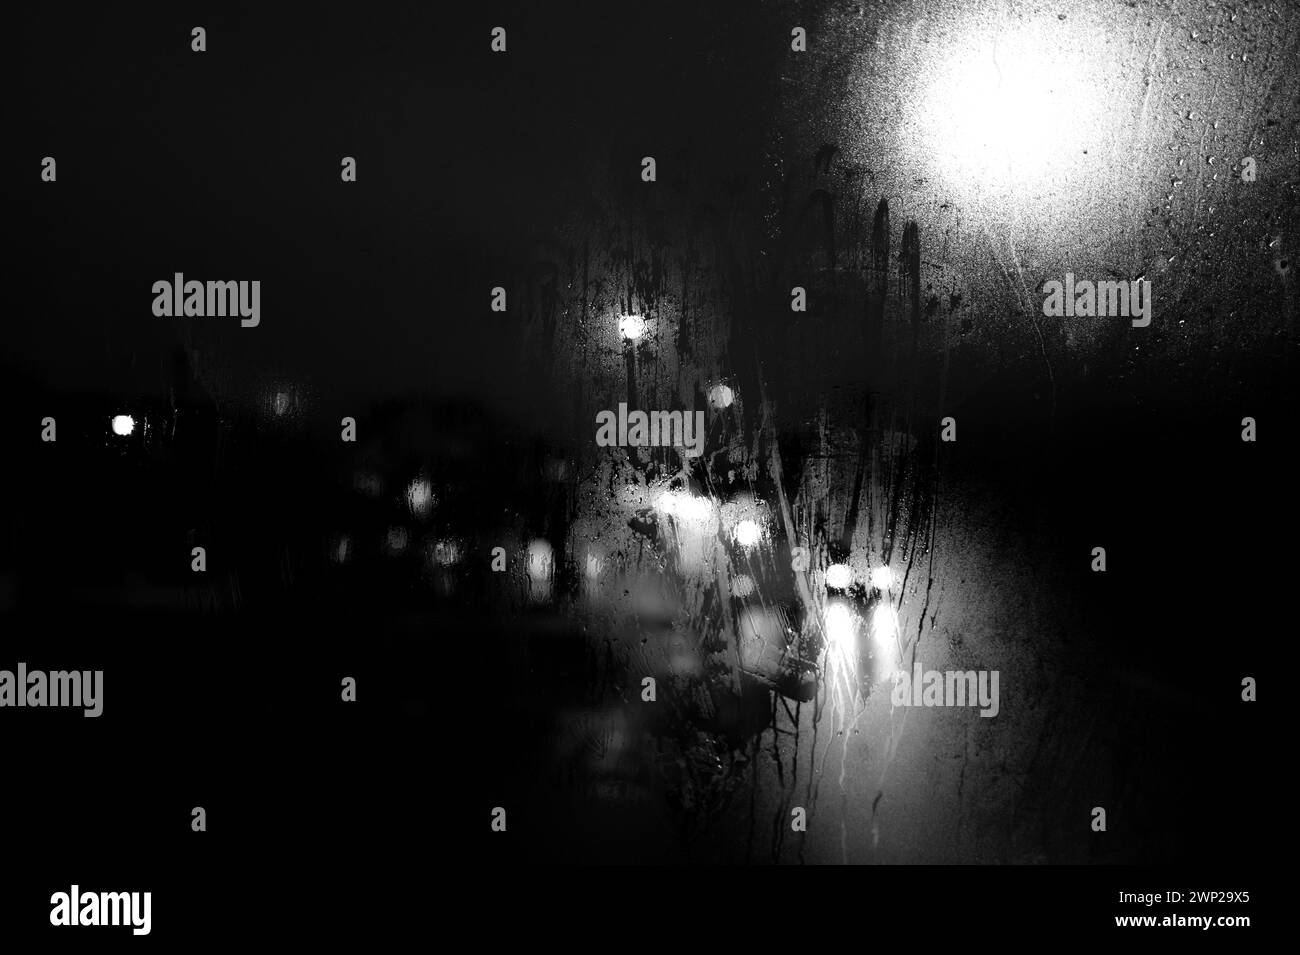 Vista notturna invernale in bianco e nero attraverso la finestra dell'autobus, i semafori, i fari per auto, i semafori, i semafori, finestra nebbiosa e gocce di pioggia Foto Stock